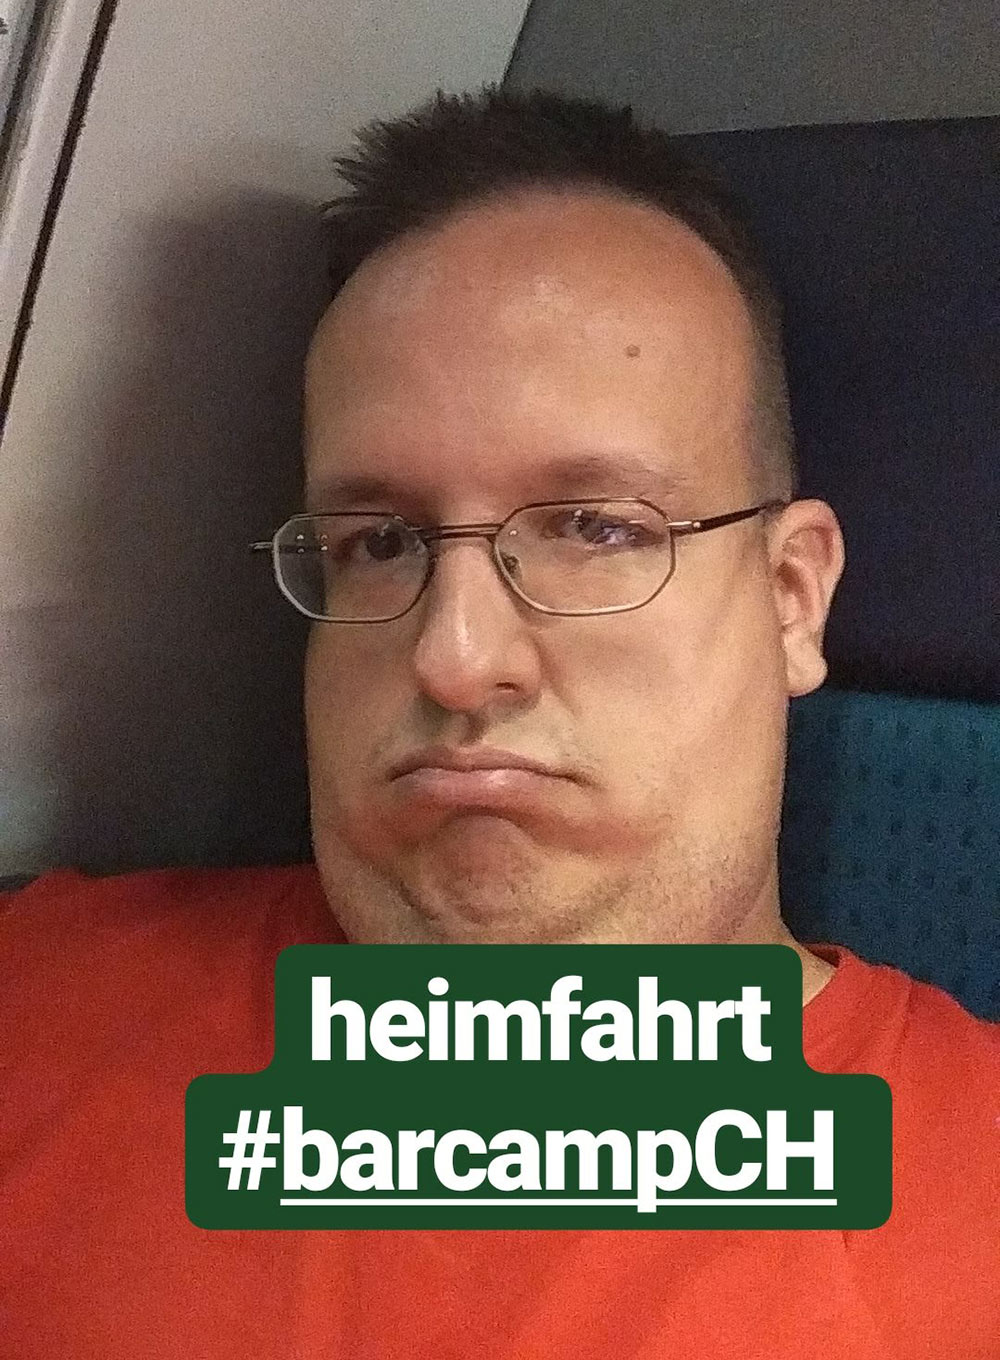 barcamp schweiz 2018 barcampch 27 - Barcamp Schweiz 2018 - Mein Rückblick